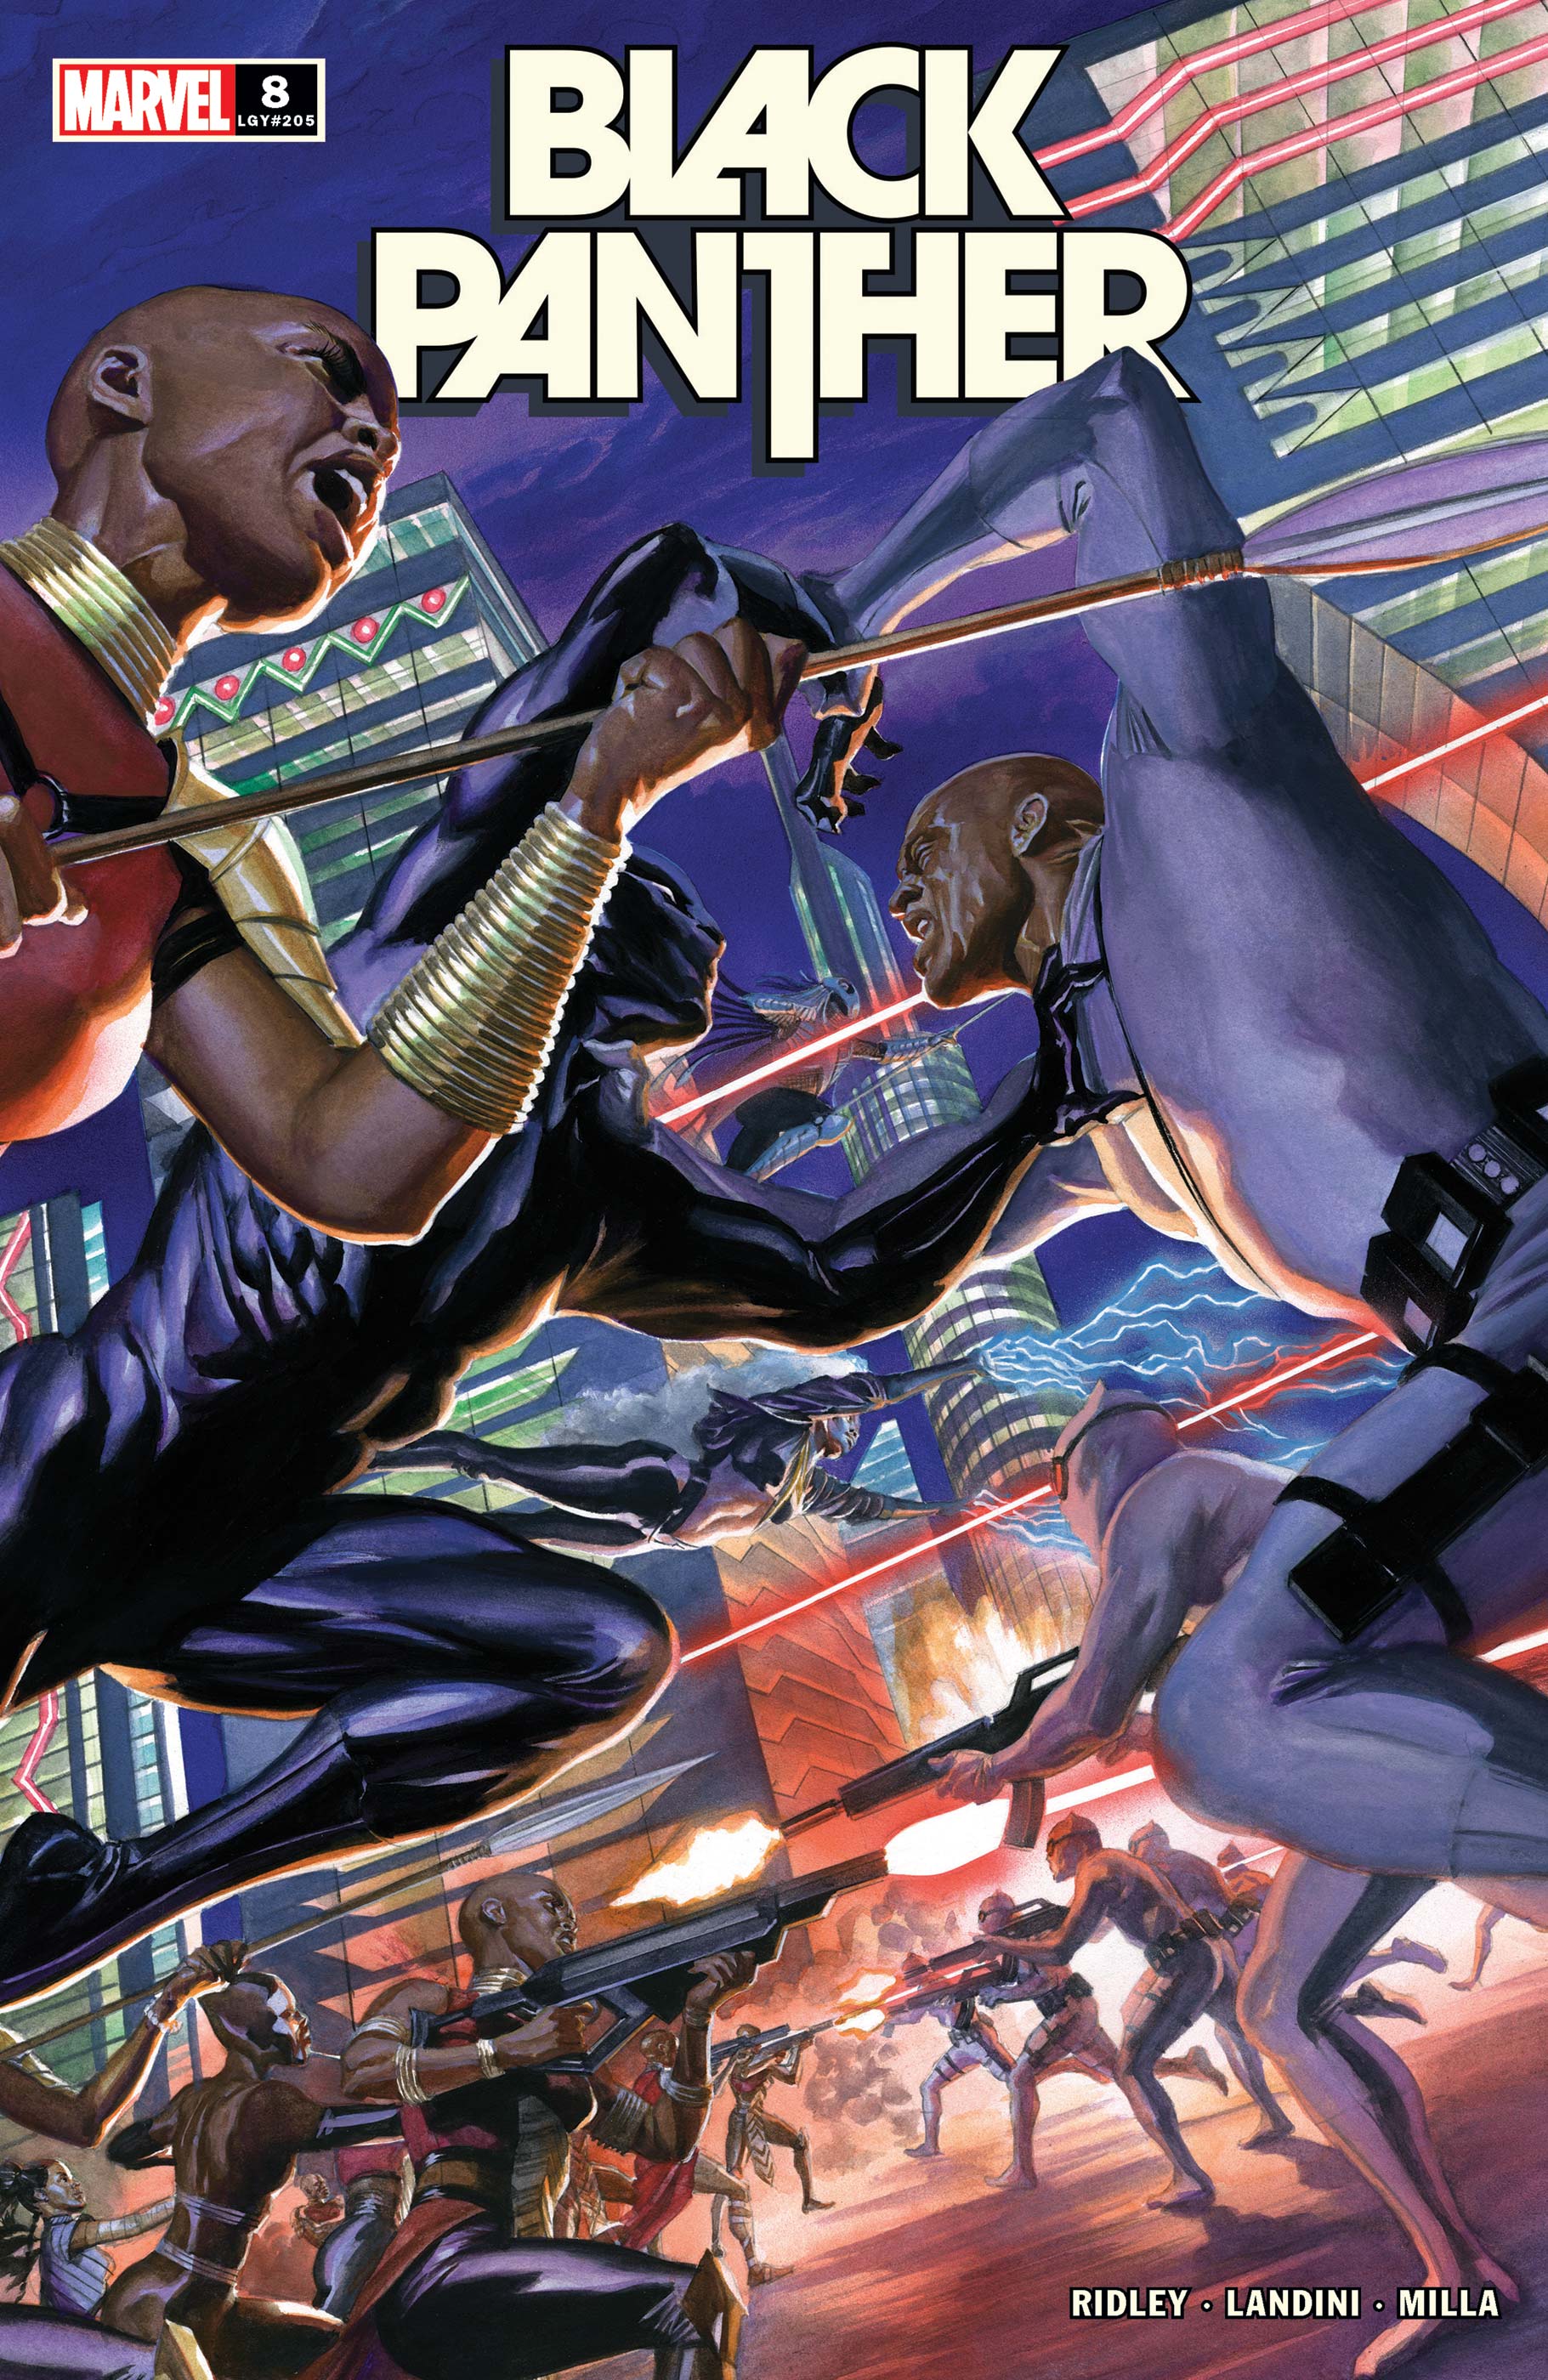 Black Panther (2021) #8